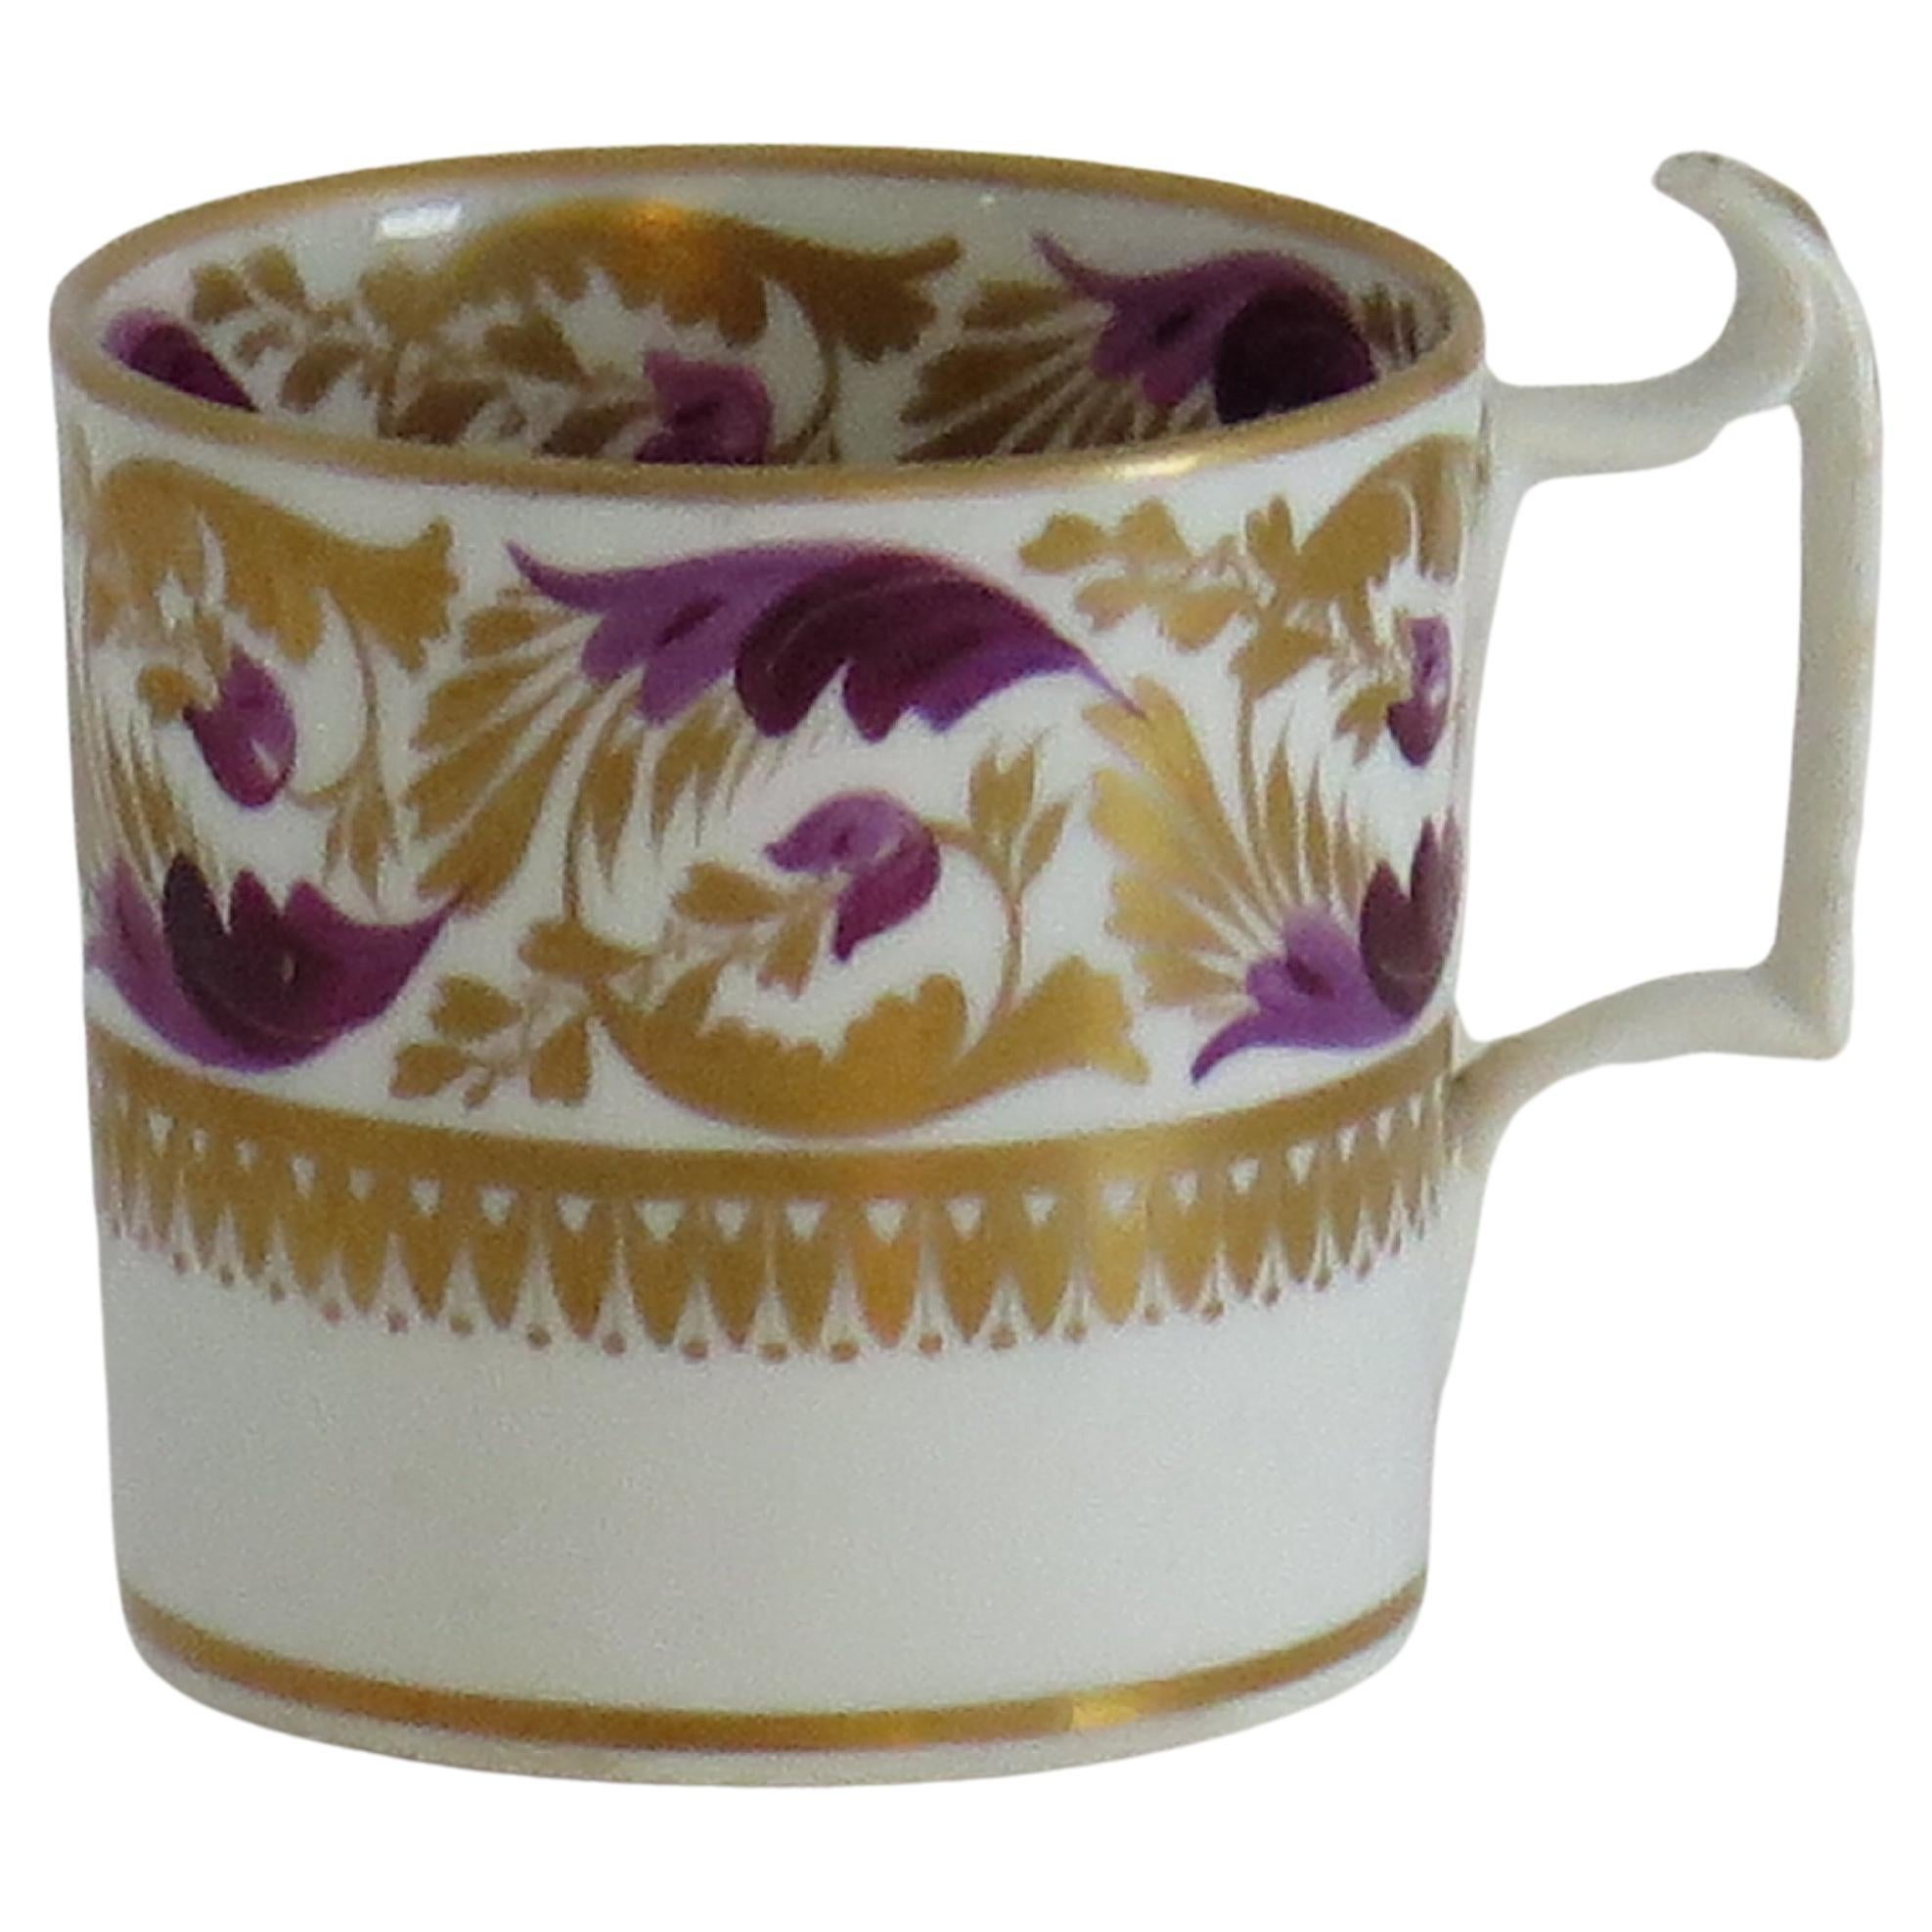 Il s'agit d'une exquise boîte à café en porcelaine fabriquée par la manufacture de Derby, sous le règne de George 111 au début du 19e siècle, vers 1815.
.
Les canettes de café à bord droit n'ont été fabriquées que pendant les 20 premières années du